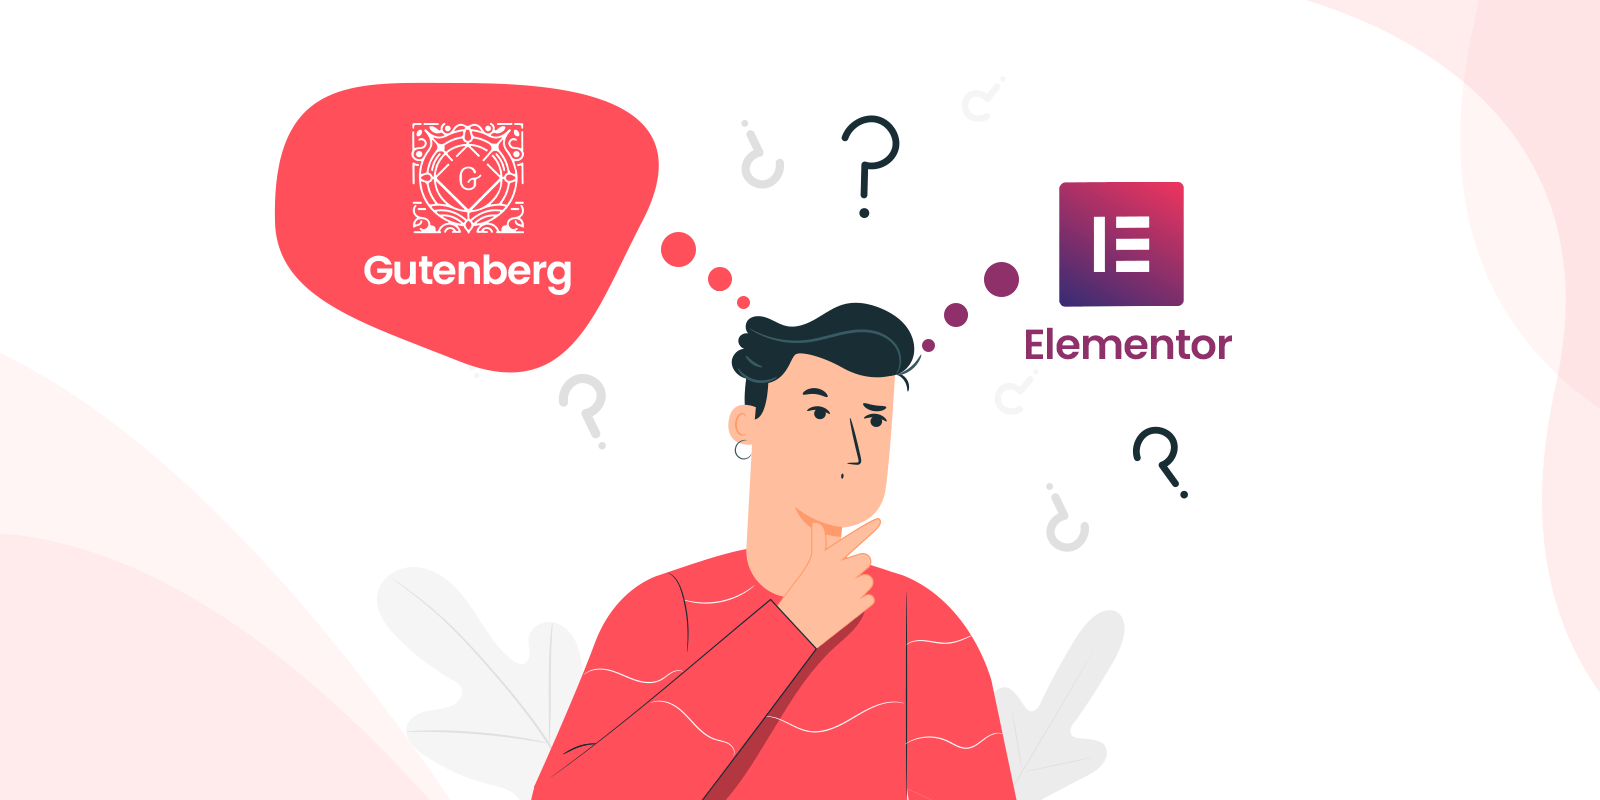 Elementor vs Gutenberg which one is best